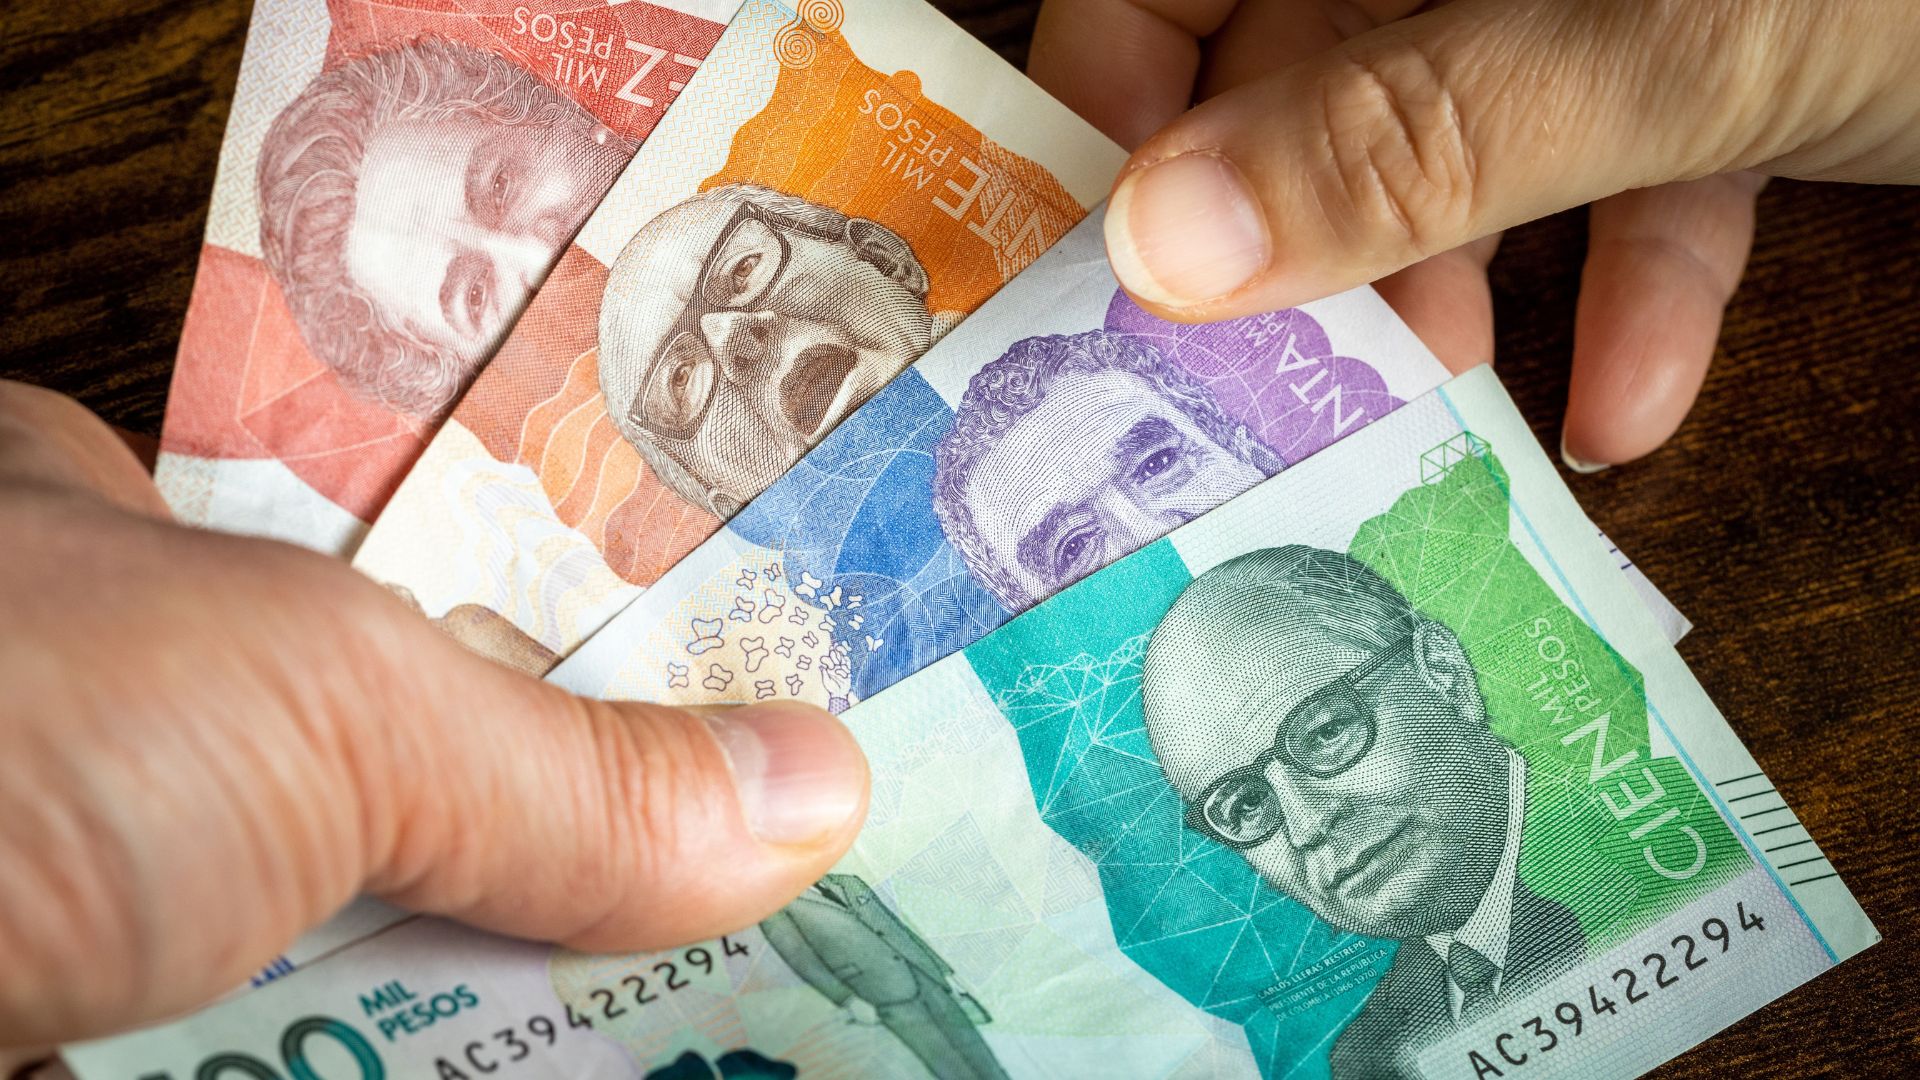 Imagen de dinero por nota sobre subsidios en Colombia